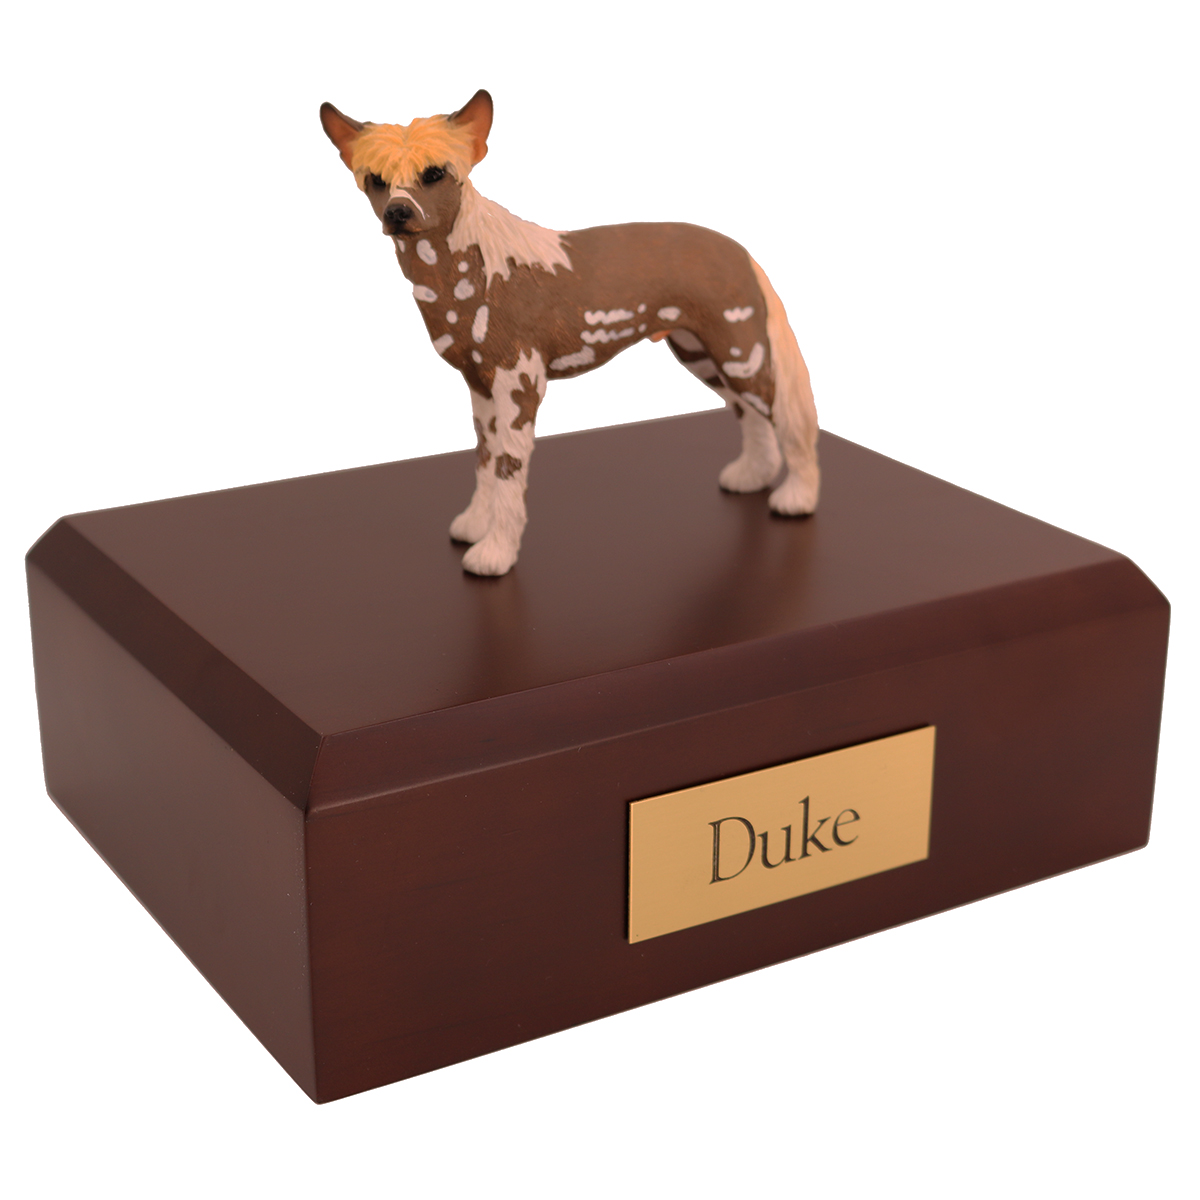 Dog, Chinese Crested Dog - Figurine Urn